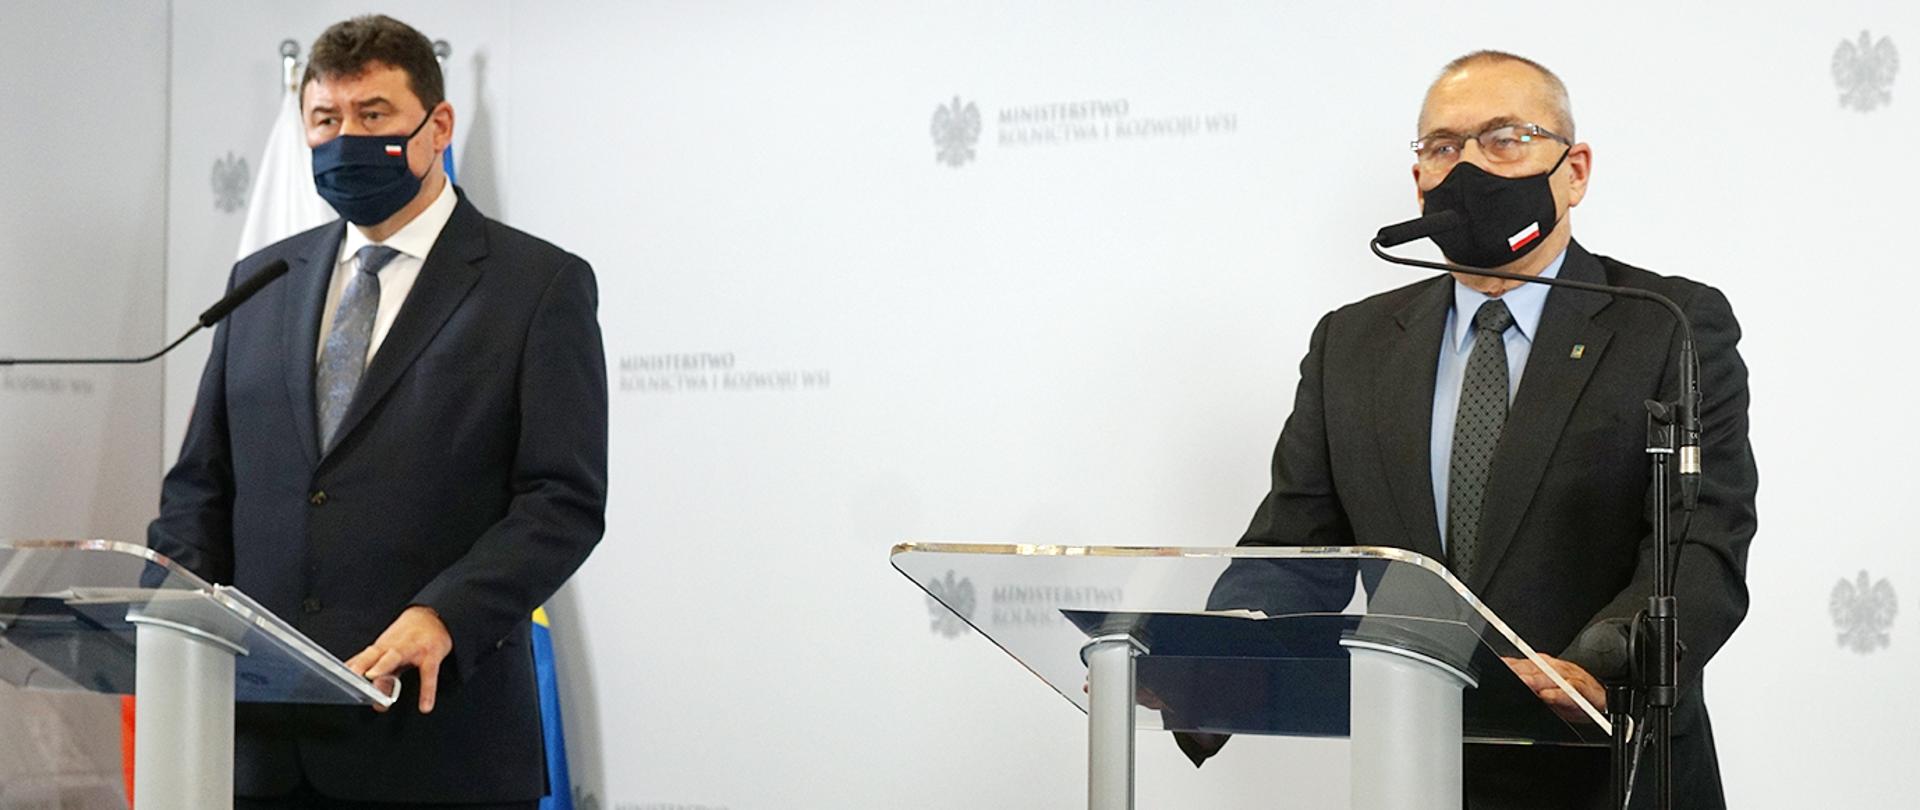 Na zdjęciu z lewej strony znajduje się Sekretarz Stanu w Ministerstwie Rolnictwa i Rozwoju Wsi Ryszard Bartosik, z prawej strony Główny Inspektor Jakości Handlowej Artykułów Rolno - Spożywczych Andrzej Romaniuk.